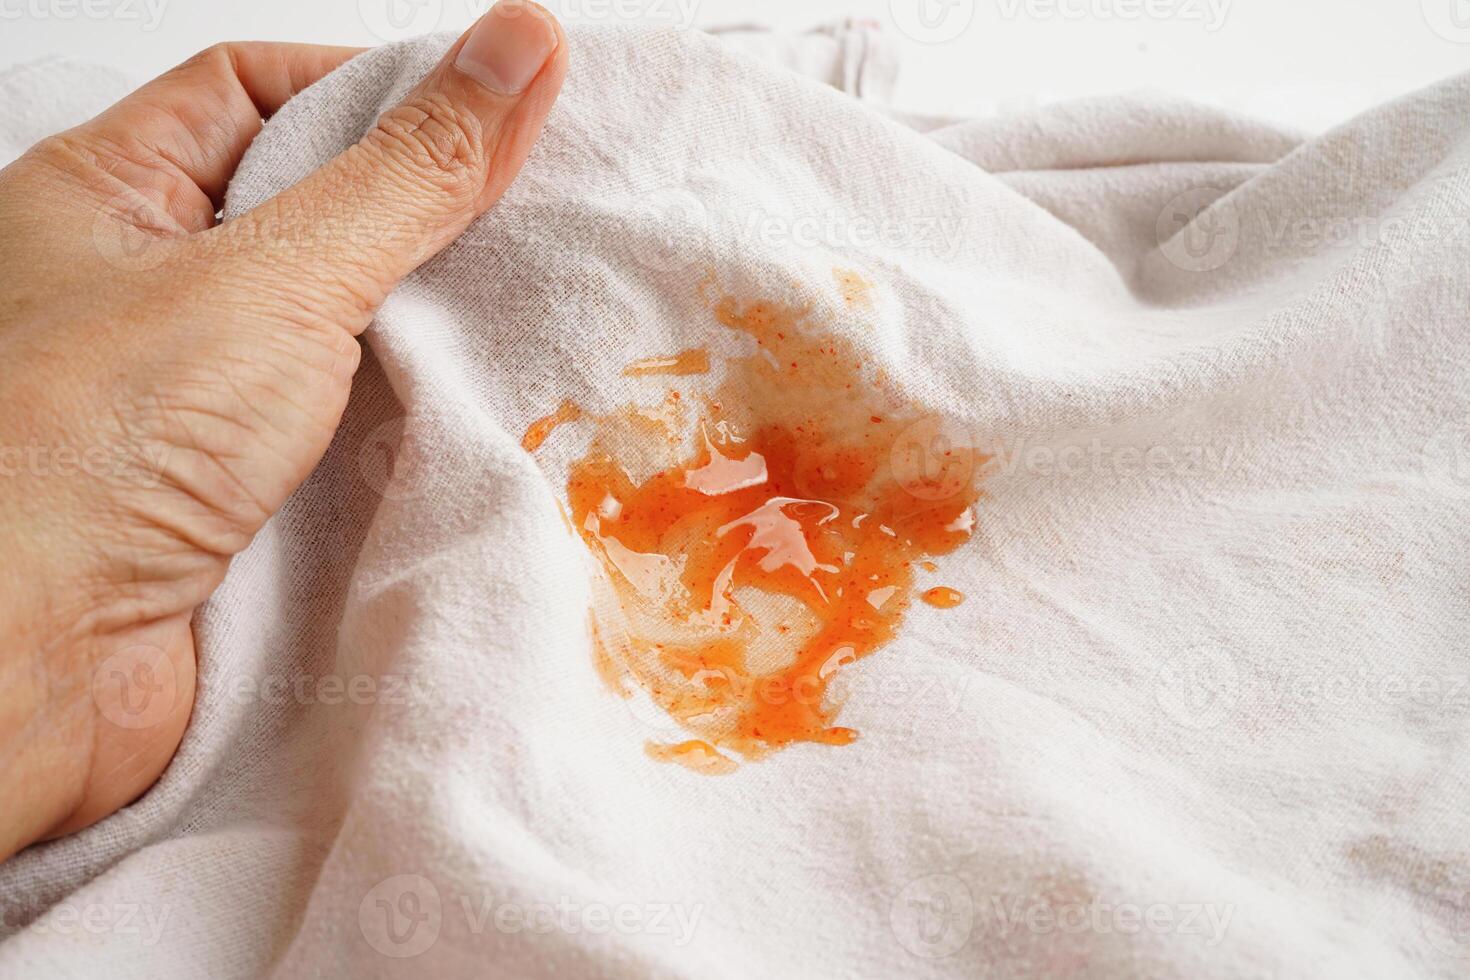 mancha de salsa picante sucia en la tela para lavar con detergente en polvo, limpieza del concepto de tareas domésticas. foto